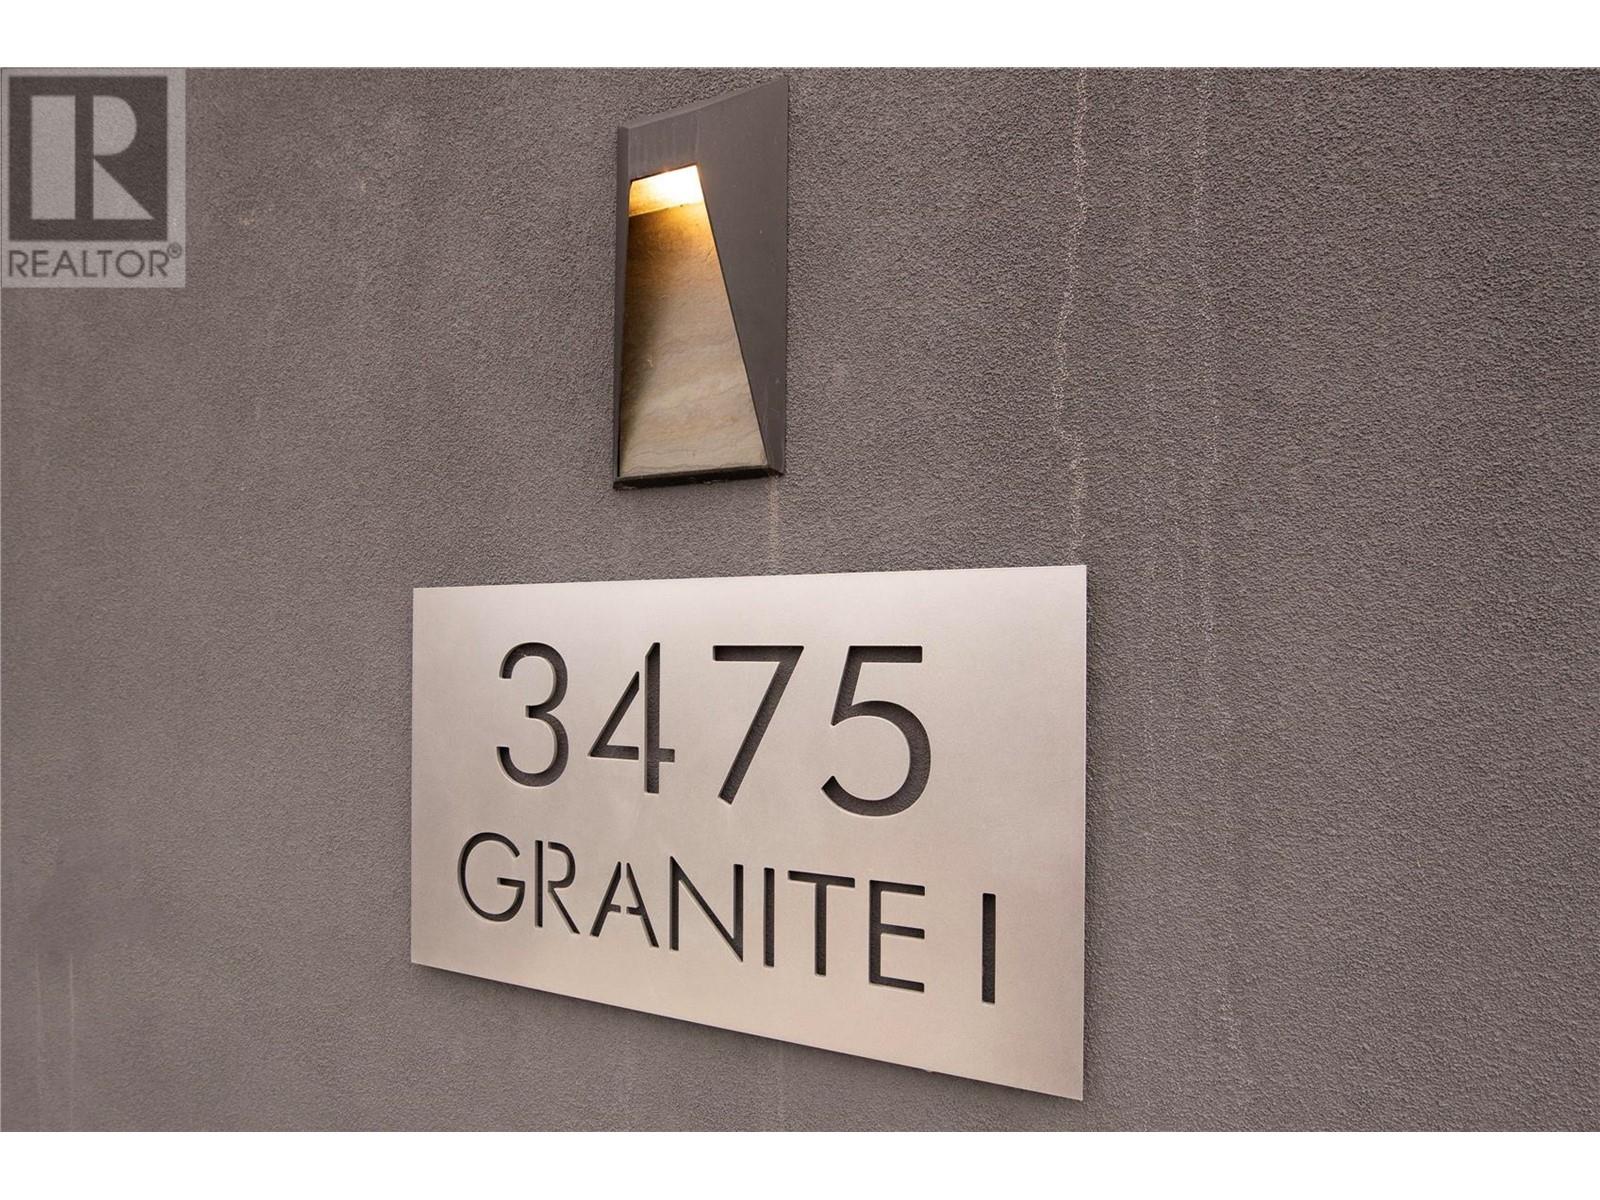 401 3475 Granite Close, Kelowna